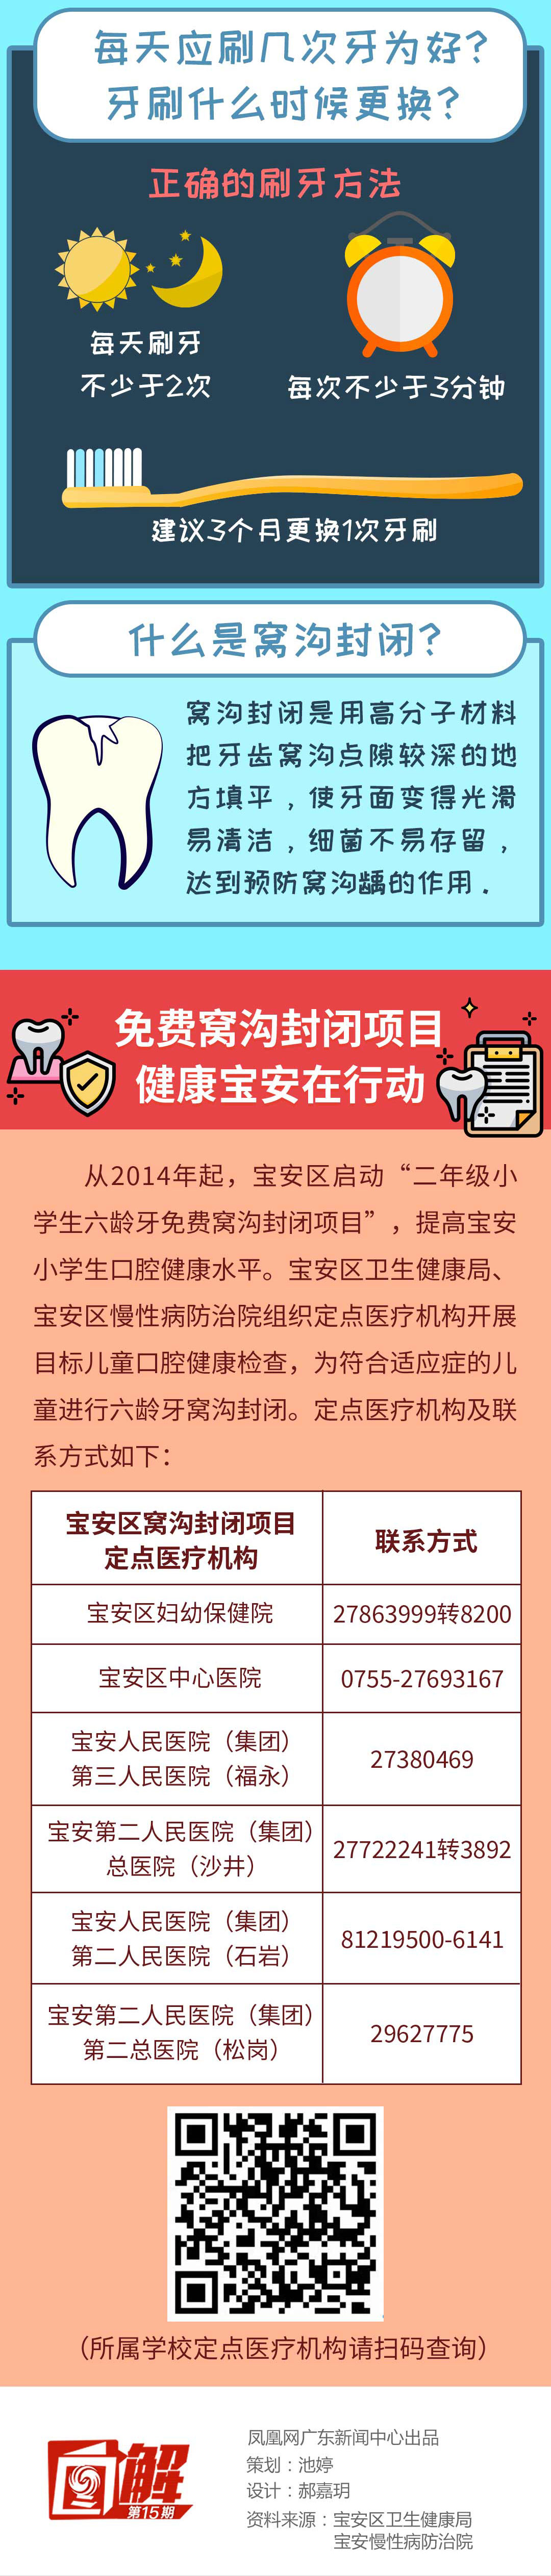 一图读懂 深圳市正式启动社会心理服务体系建设试点工作